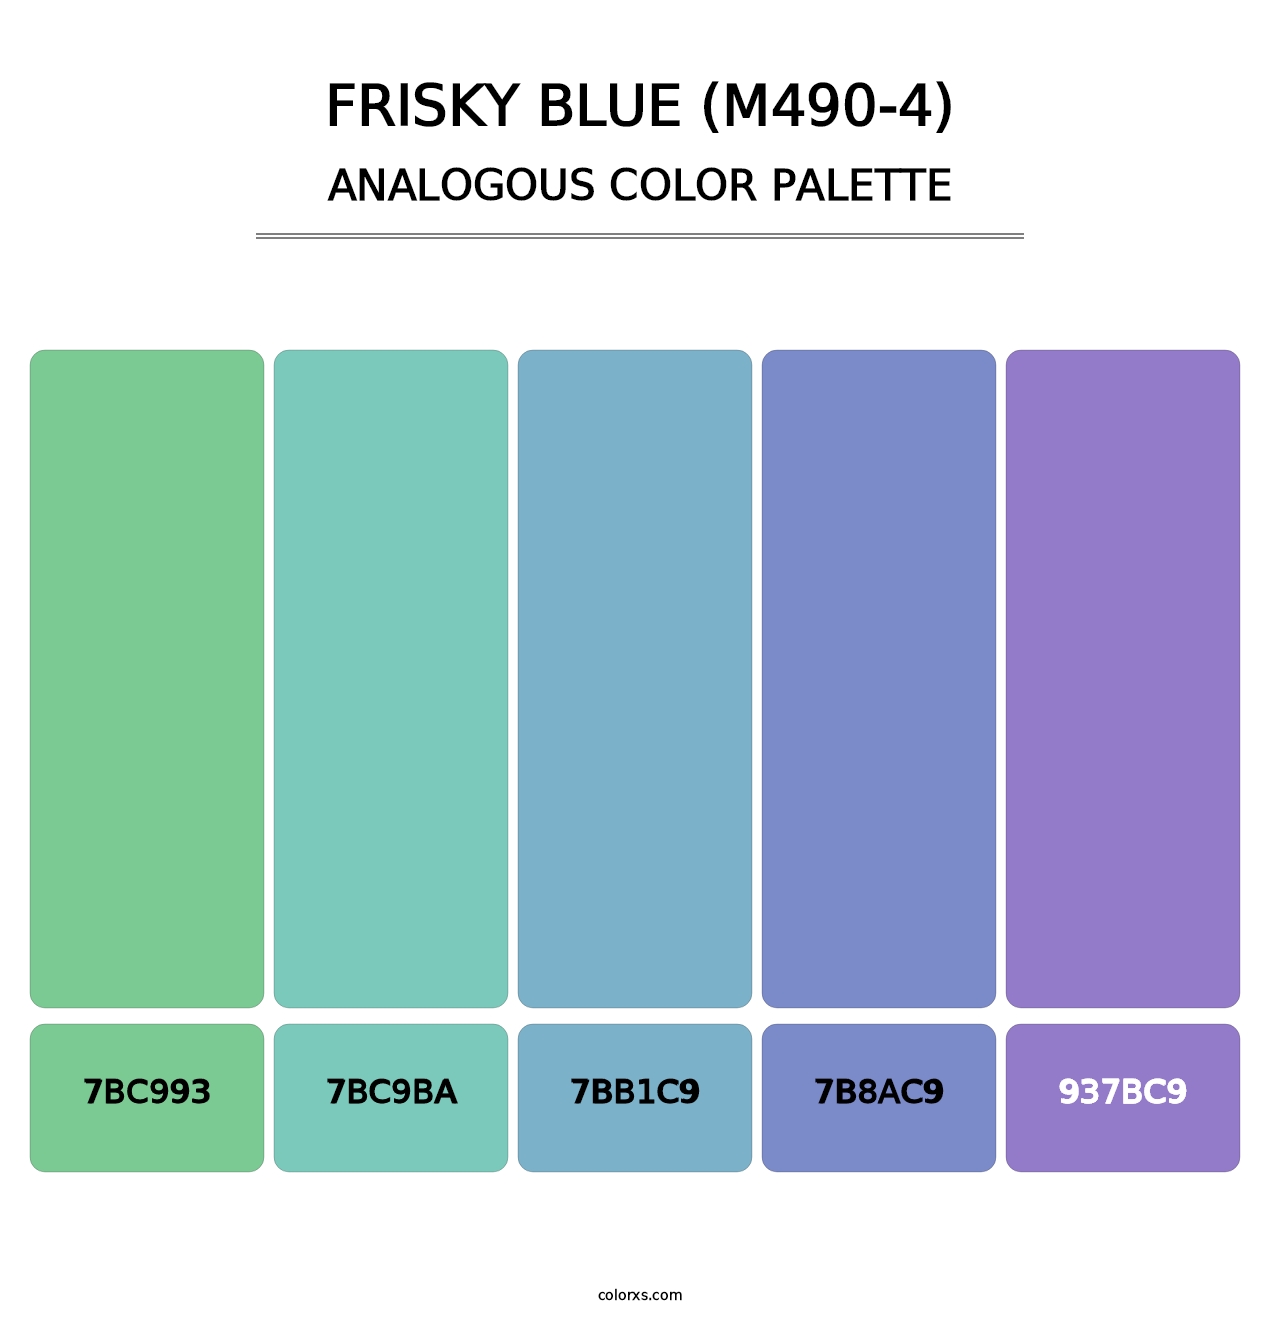 Frisky Blue (M490-4) - Analogous Color Palette